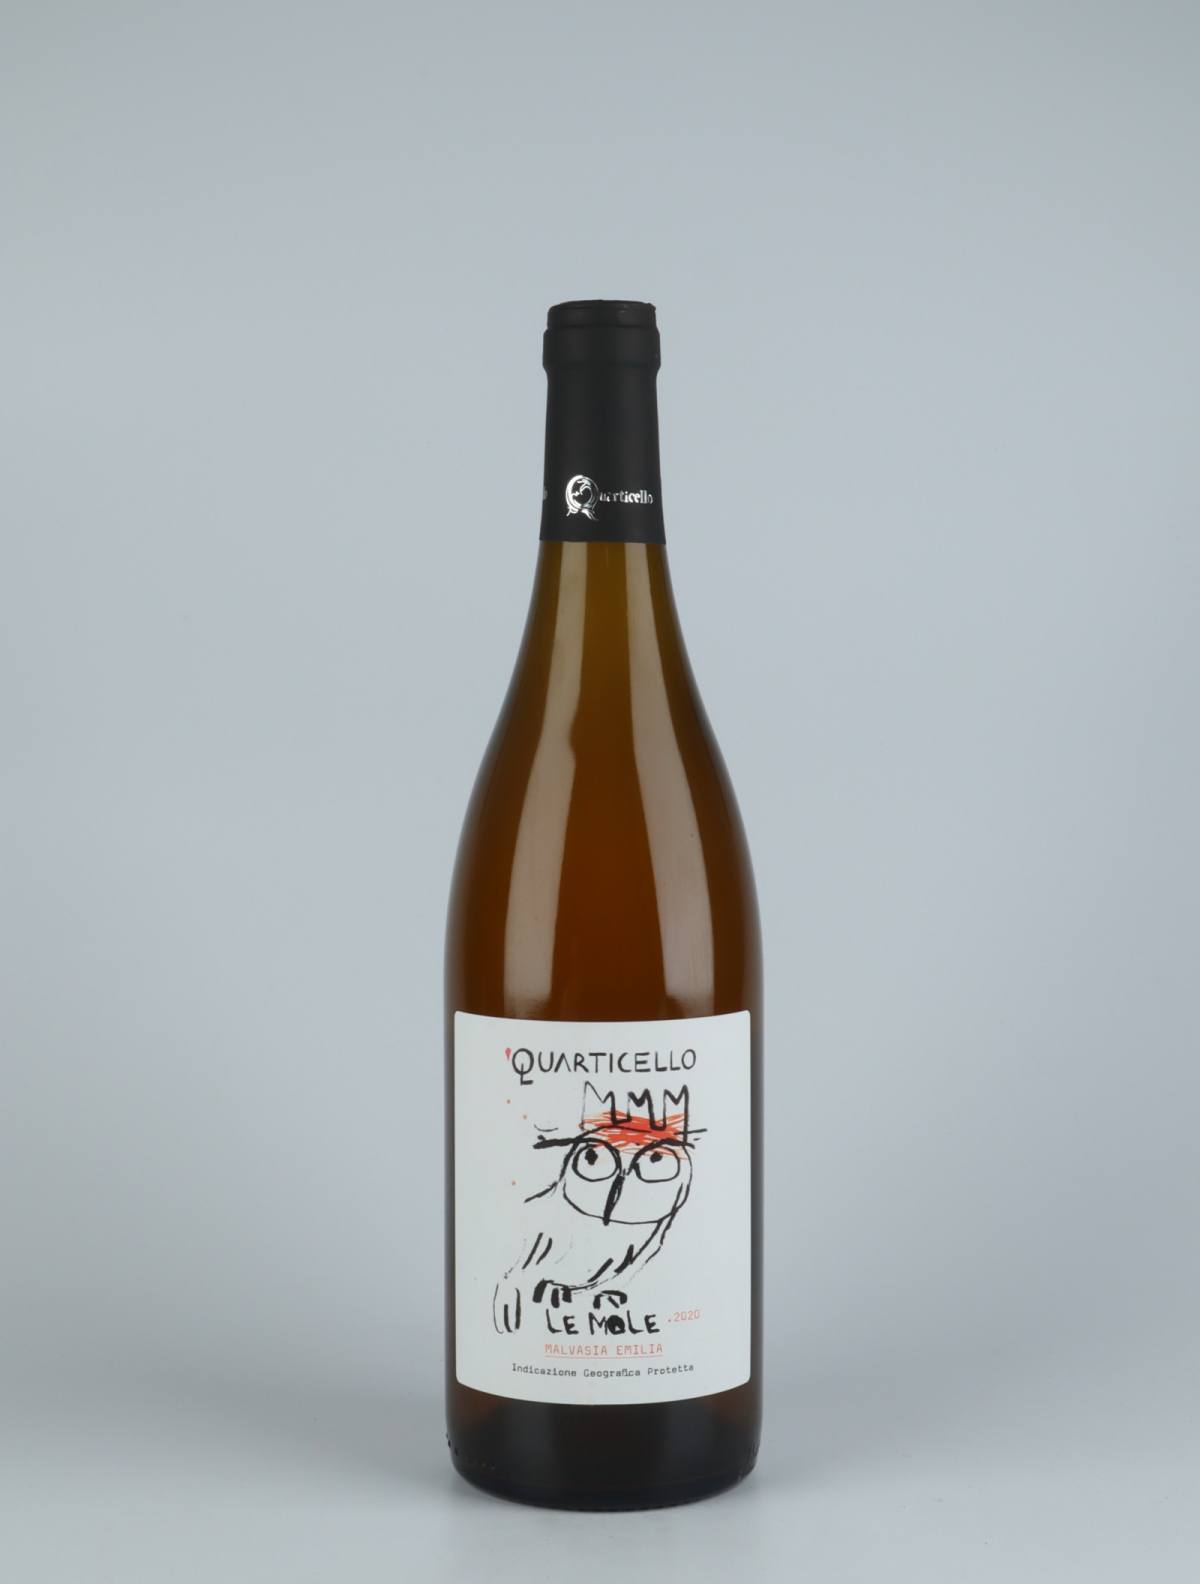 A bottle 2020 Le Mole Orange wine from Quarticello, Emilia-Romagna in Italy